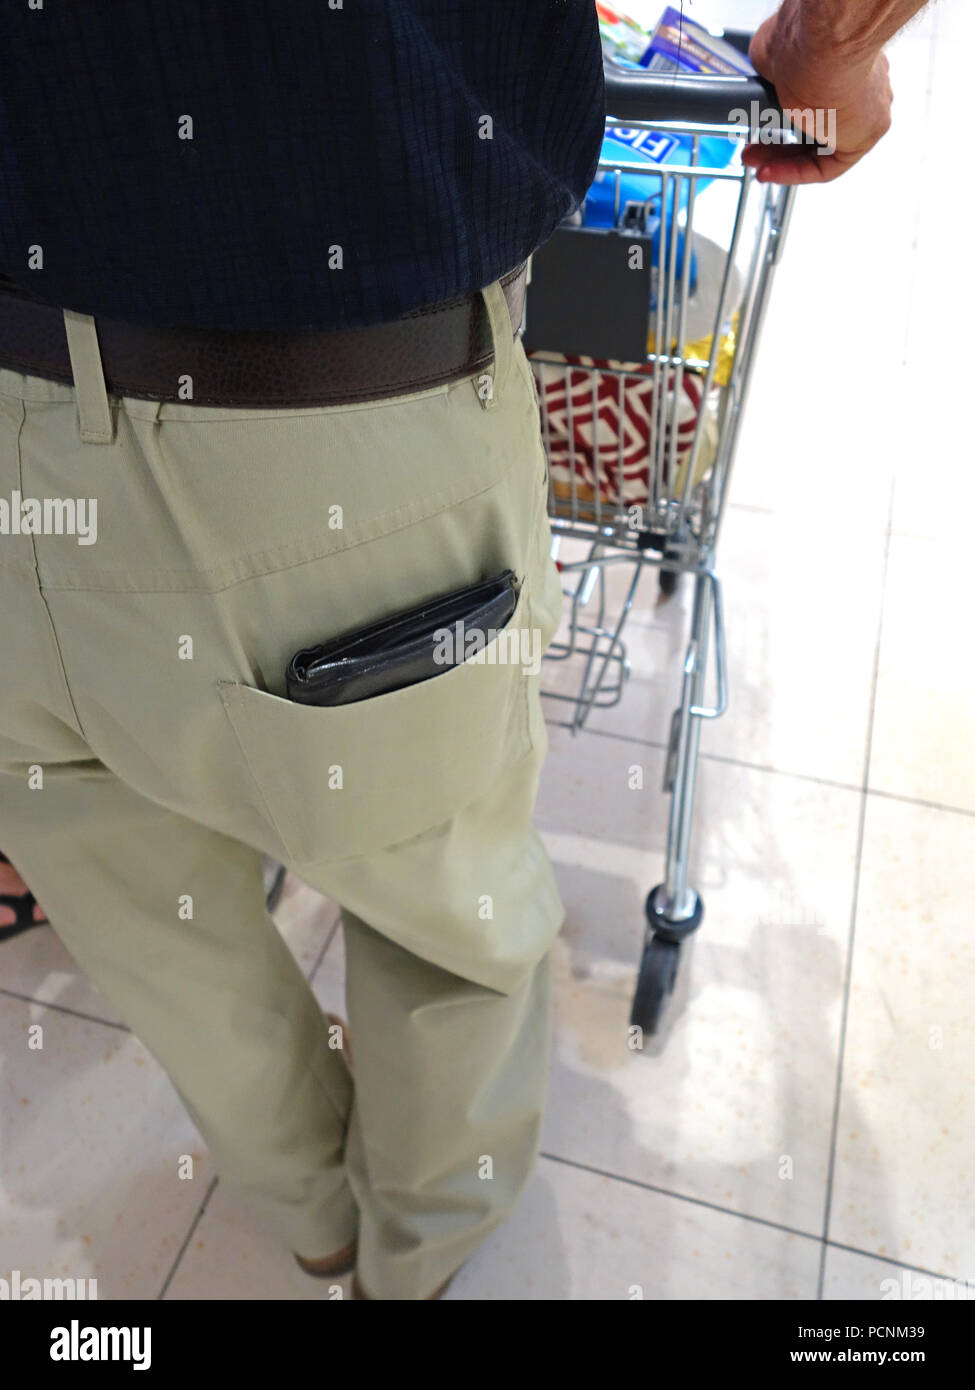 Old man shopping in supermarket avec son porte-monnaie sur l'affichage complet sortant de sa poche arrière prêt pour un pickpocket Banque D'Images